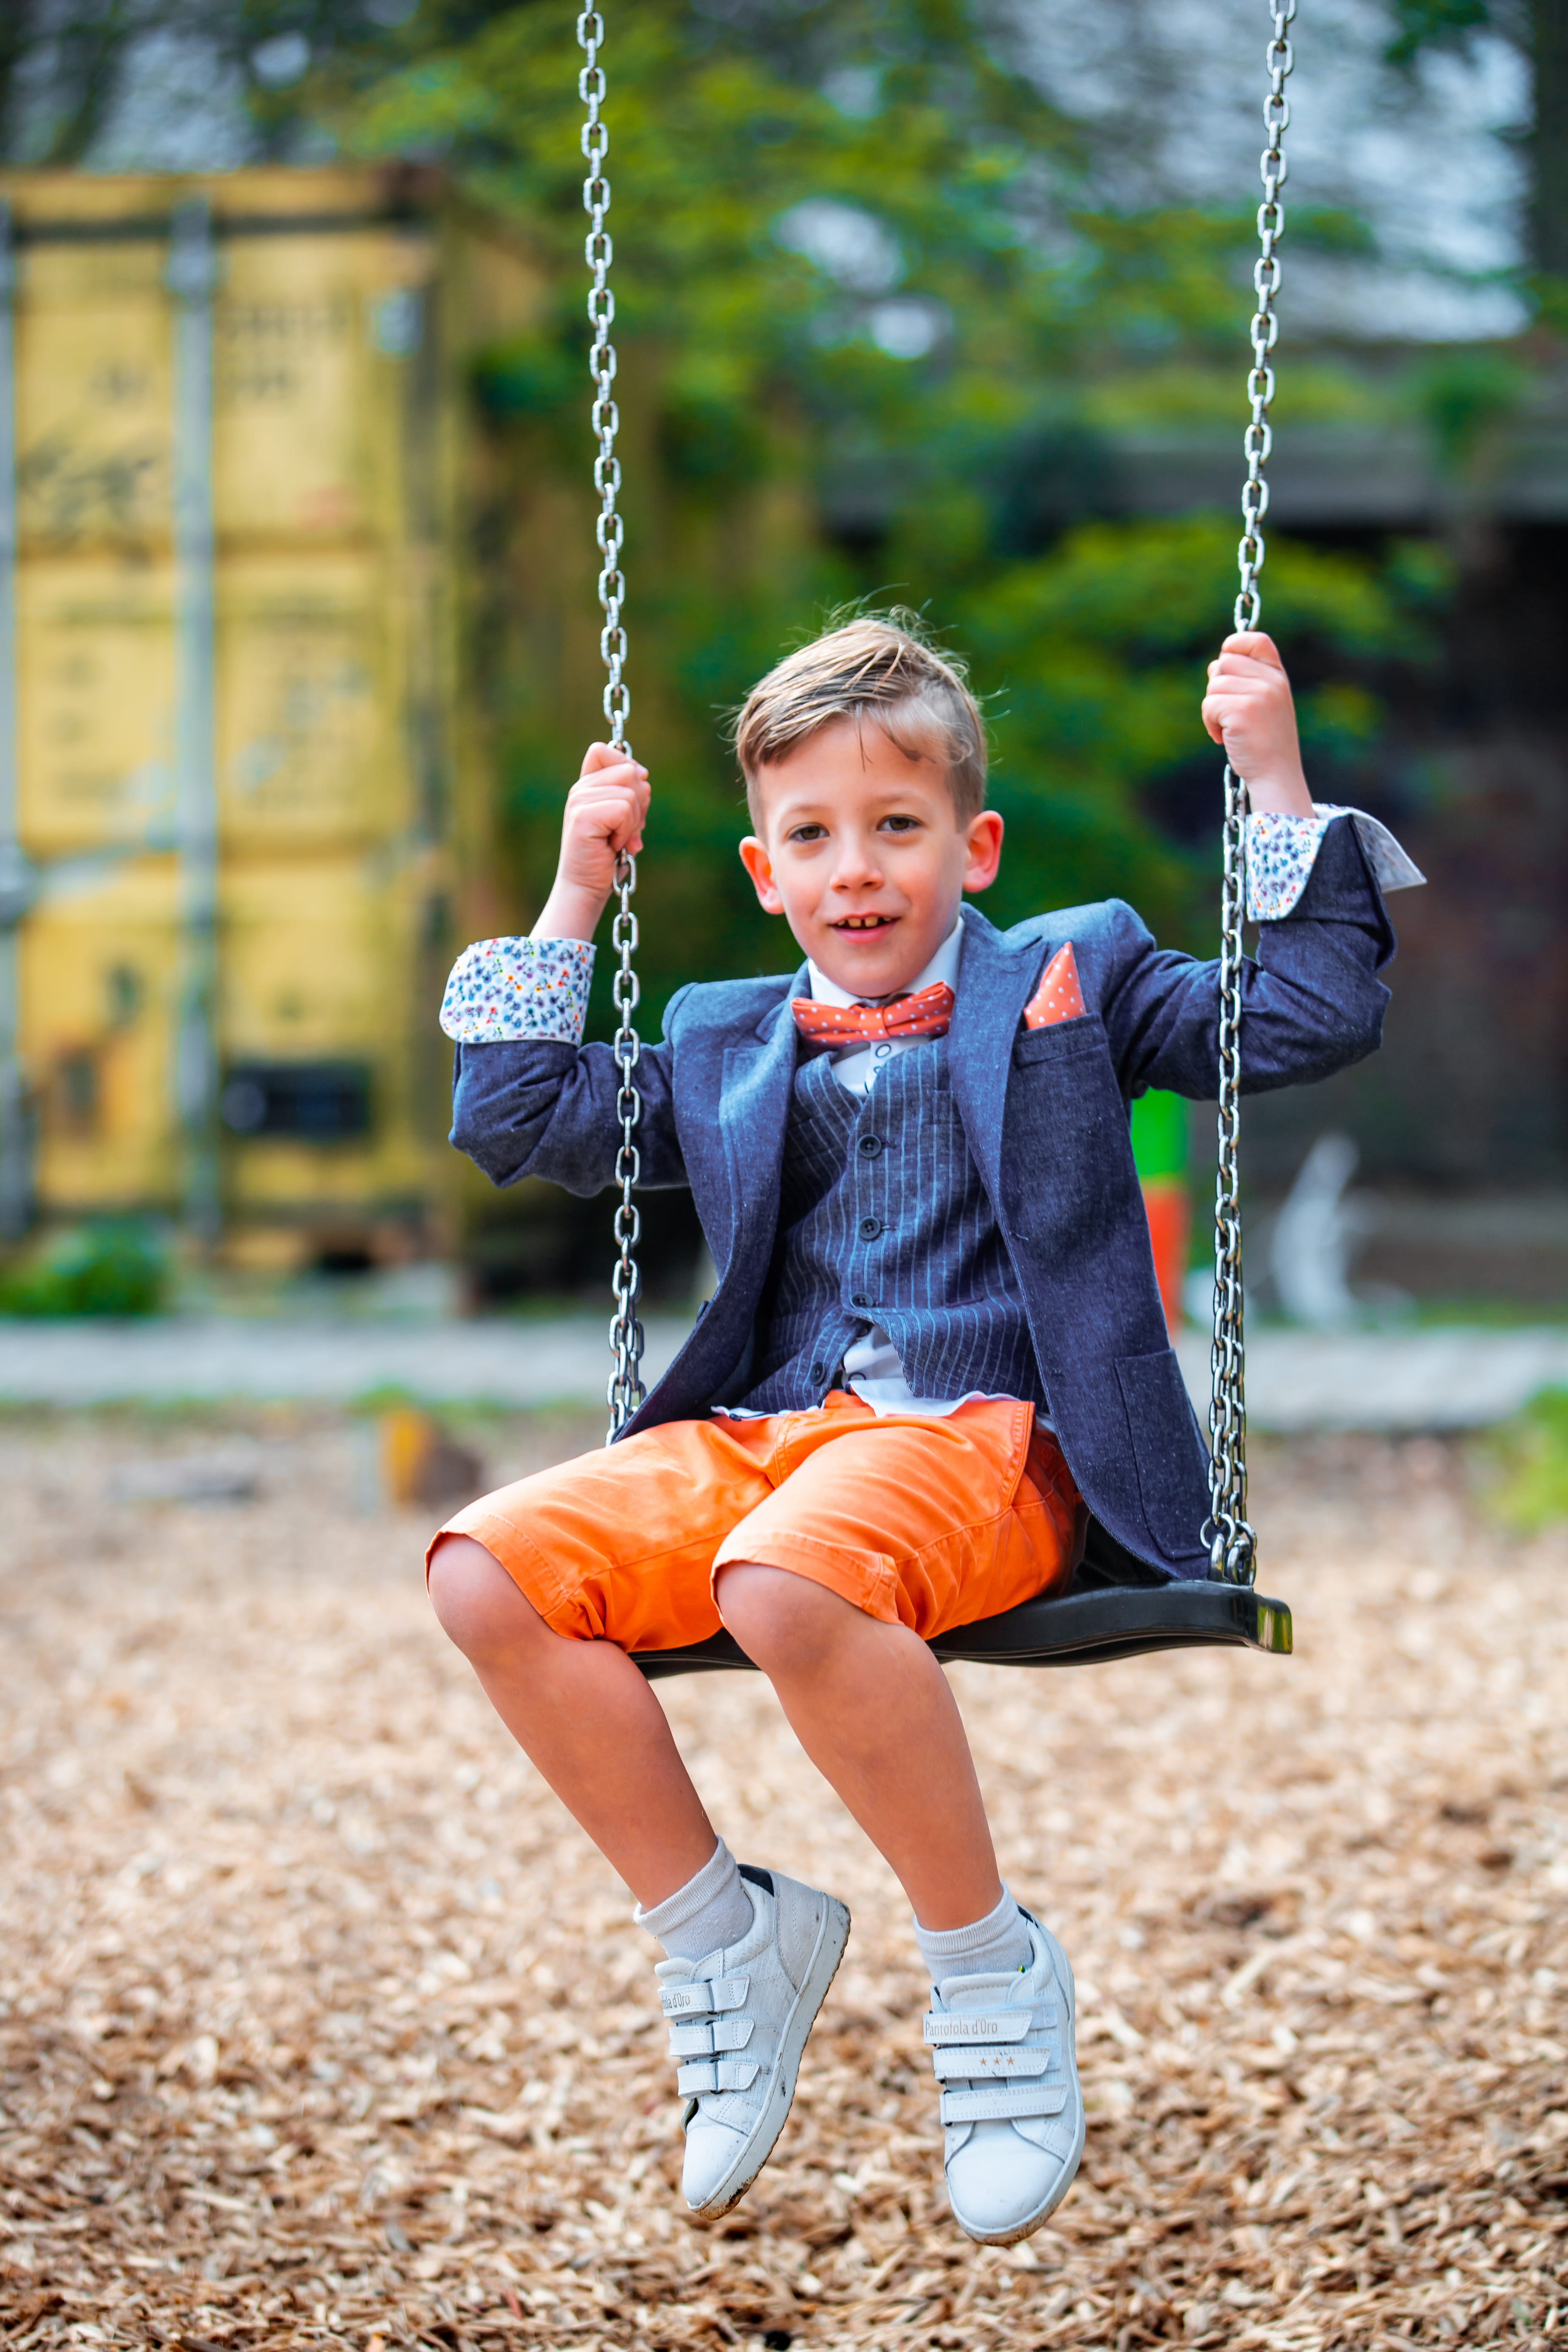 boy in pinstriped suit jacket on swing, apparel, shoe, footwear